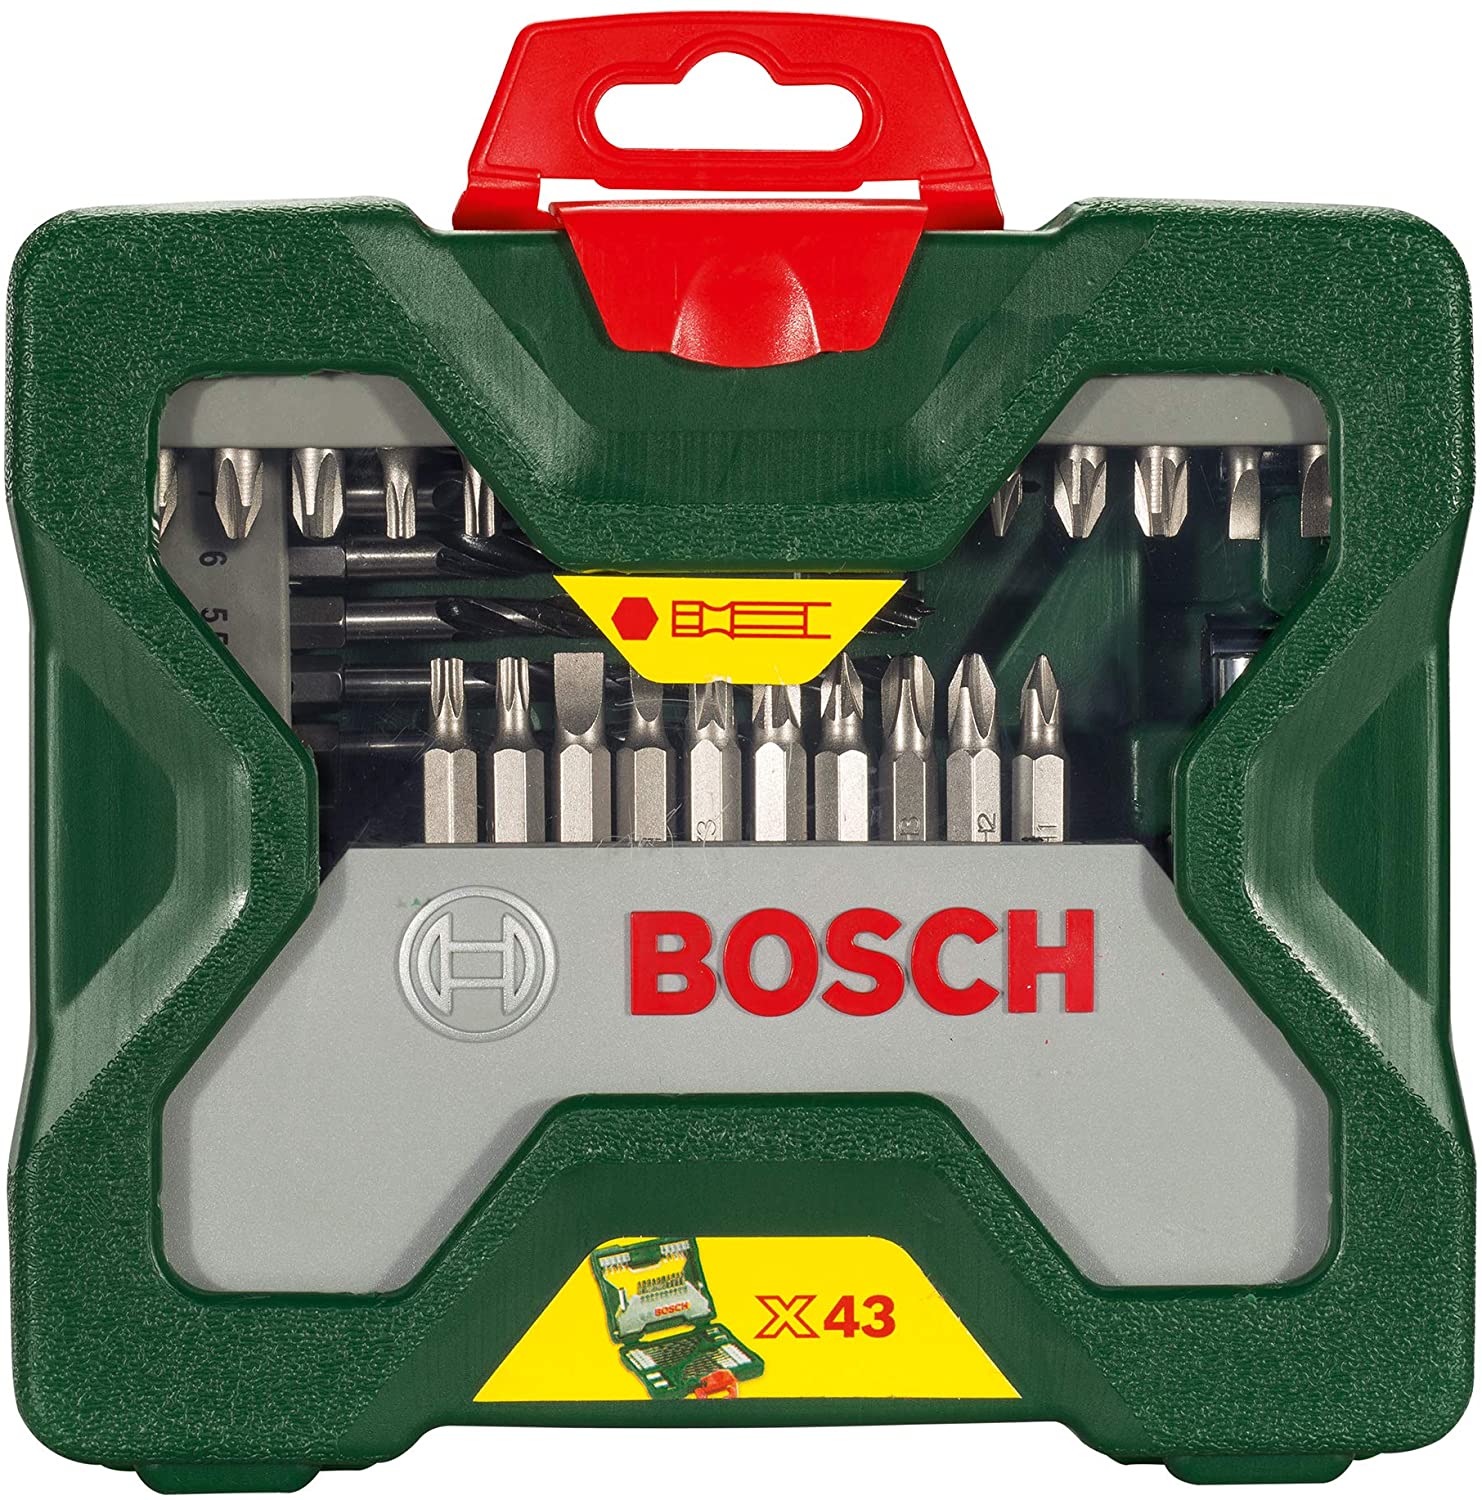 Bosch 43tlg. X Line Sechskantbohrer  und Schrauber Set